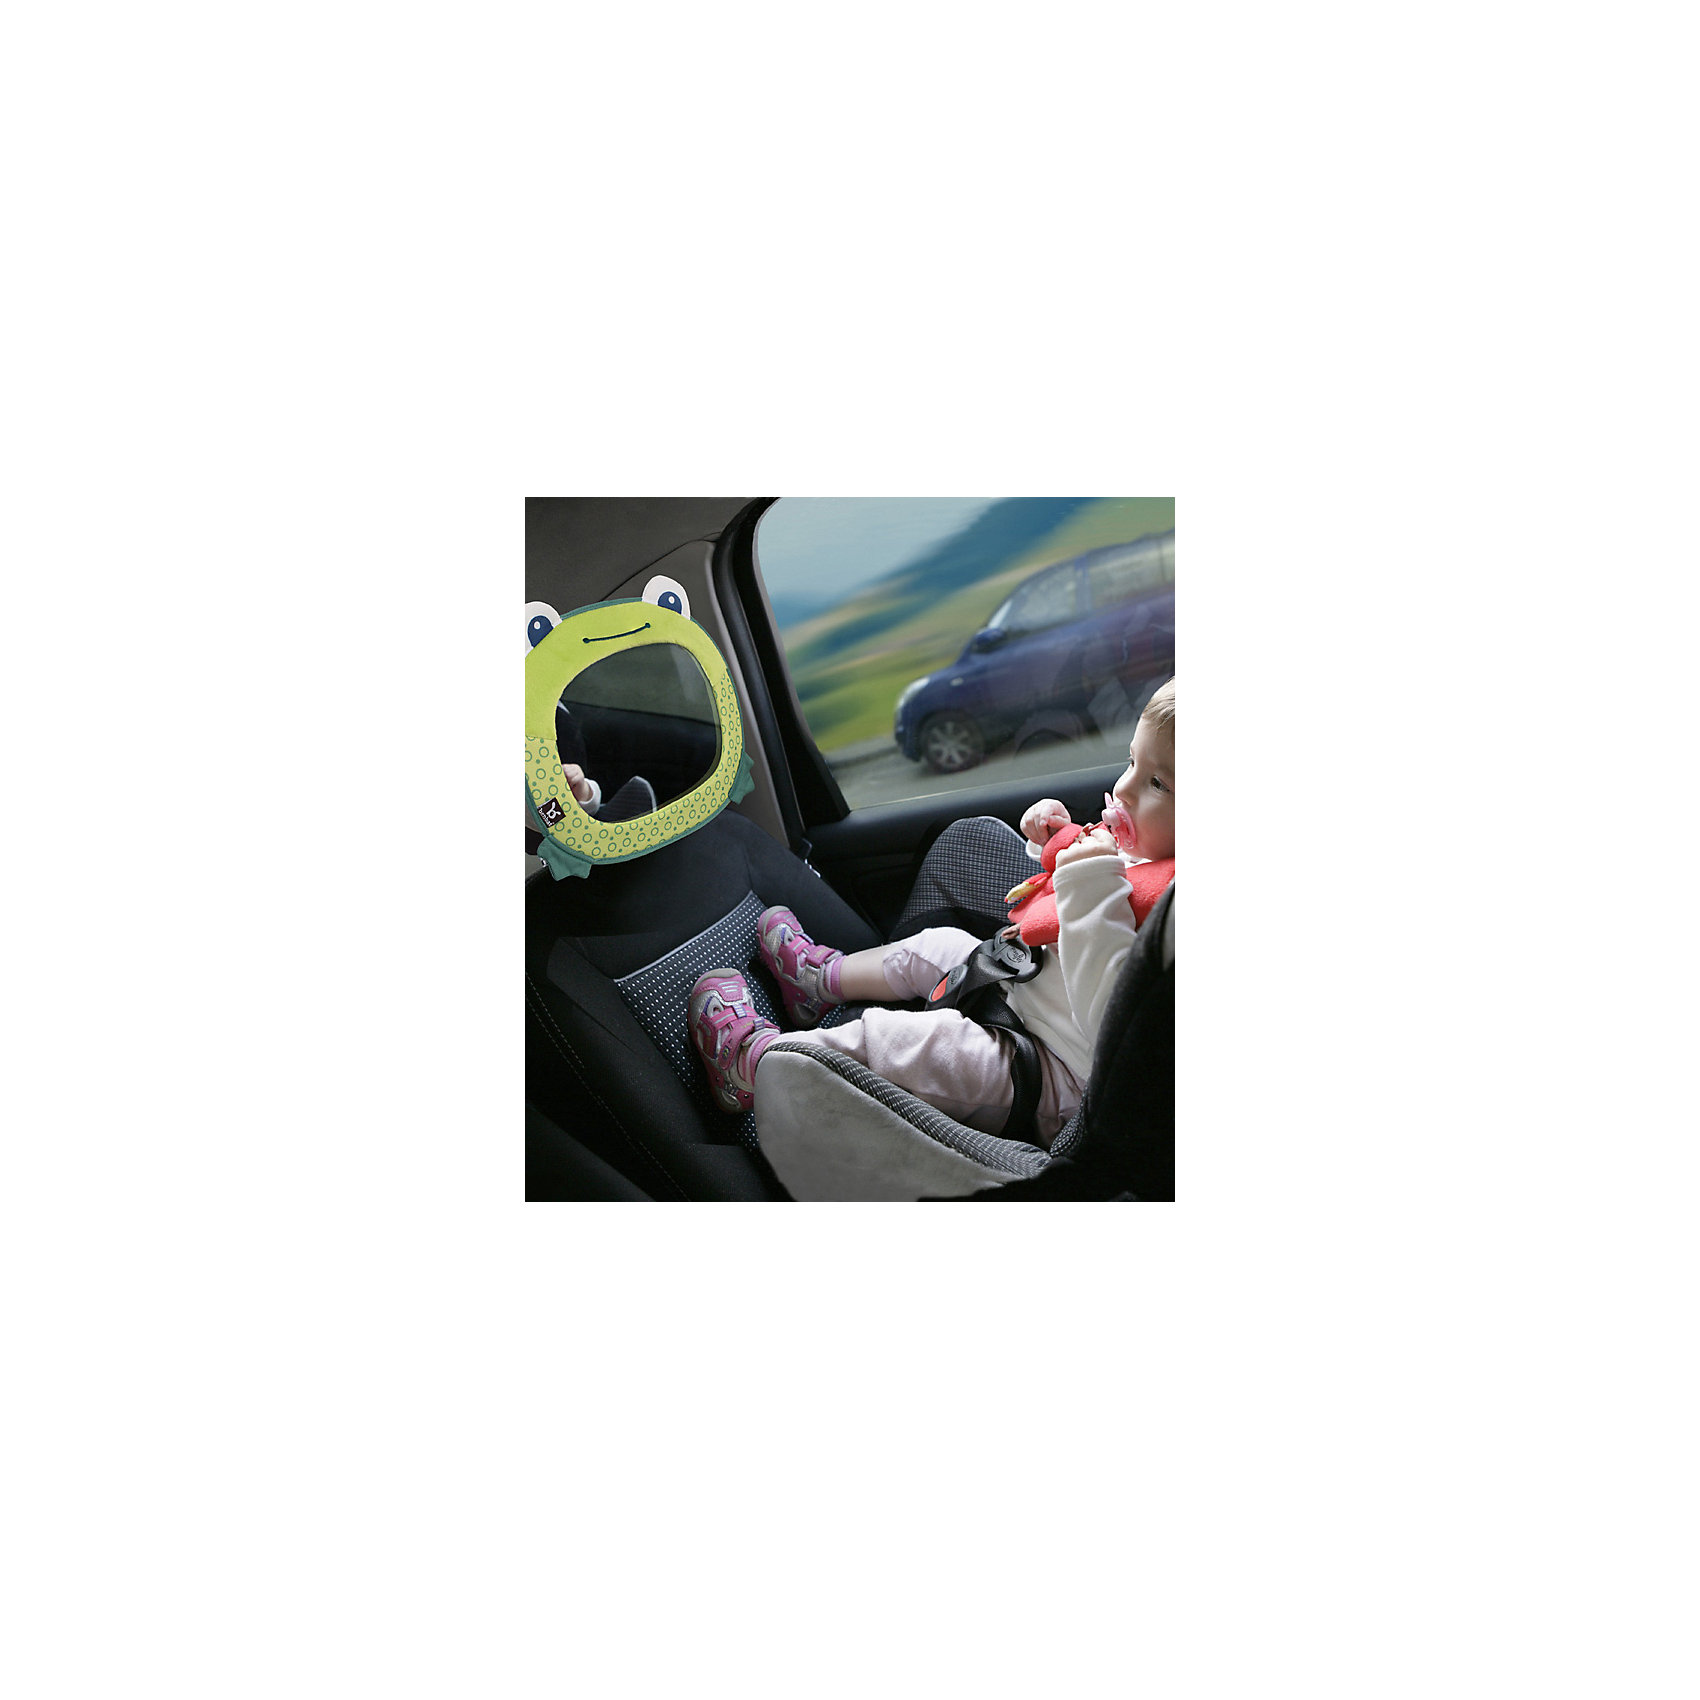 Зеркало в автомобил для контроля за ребенком , лягушка BenBat 14916123